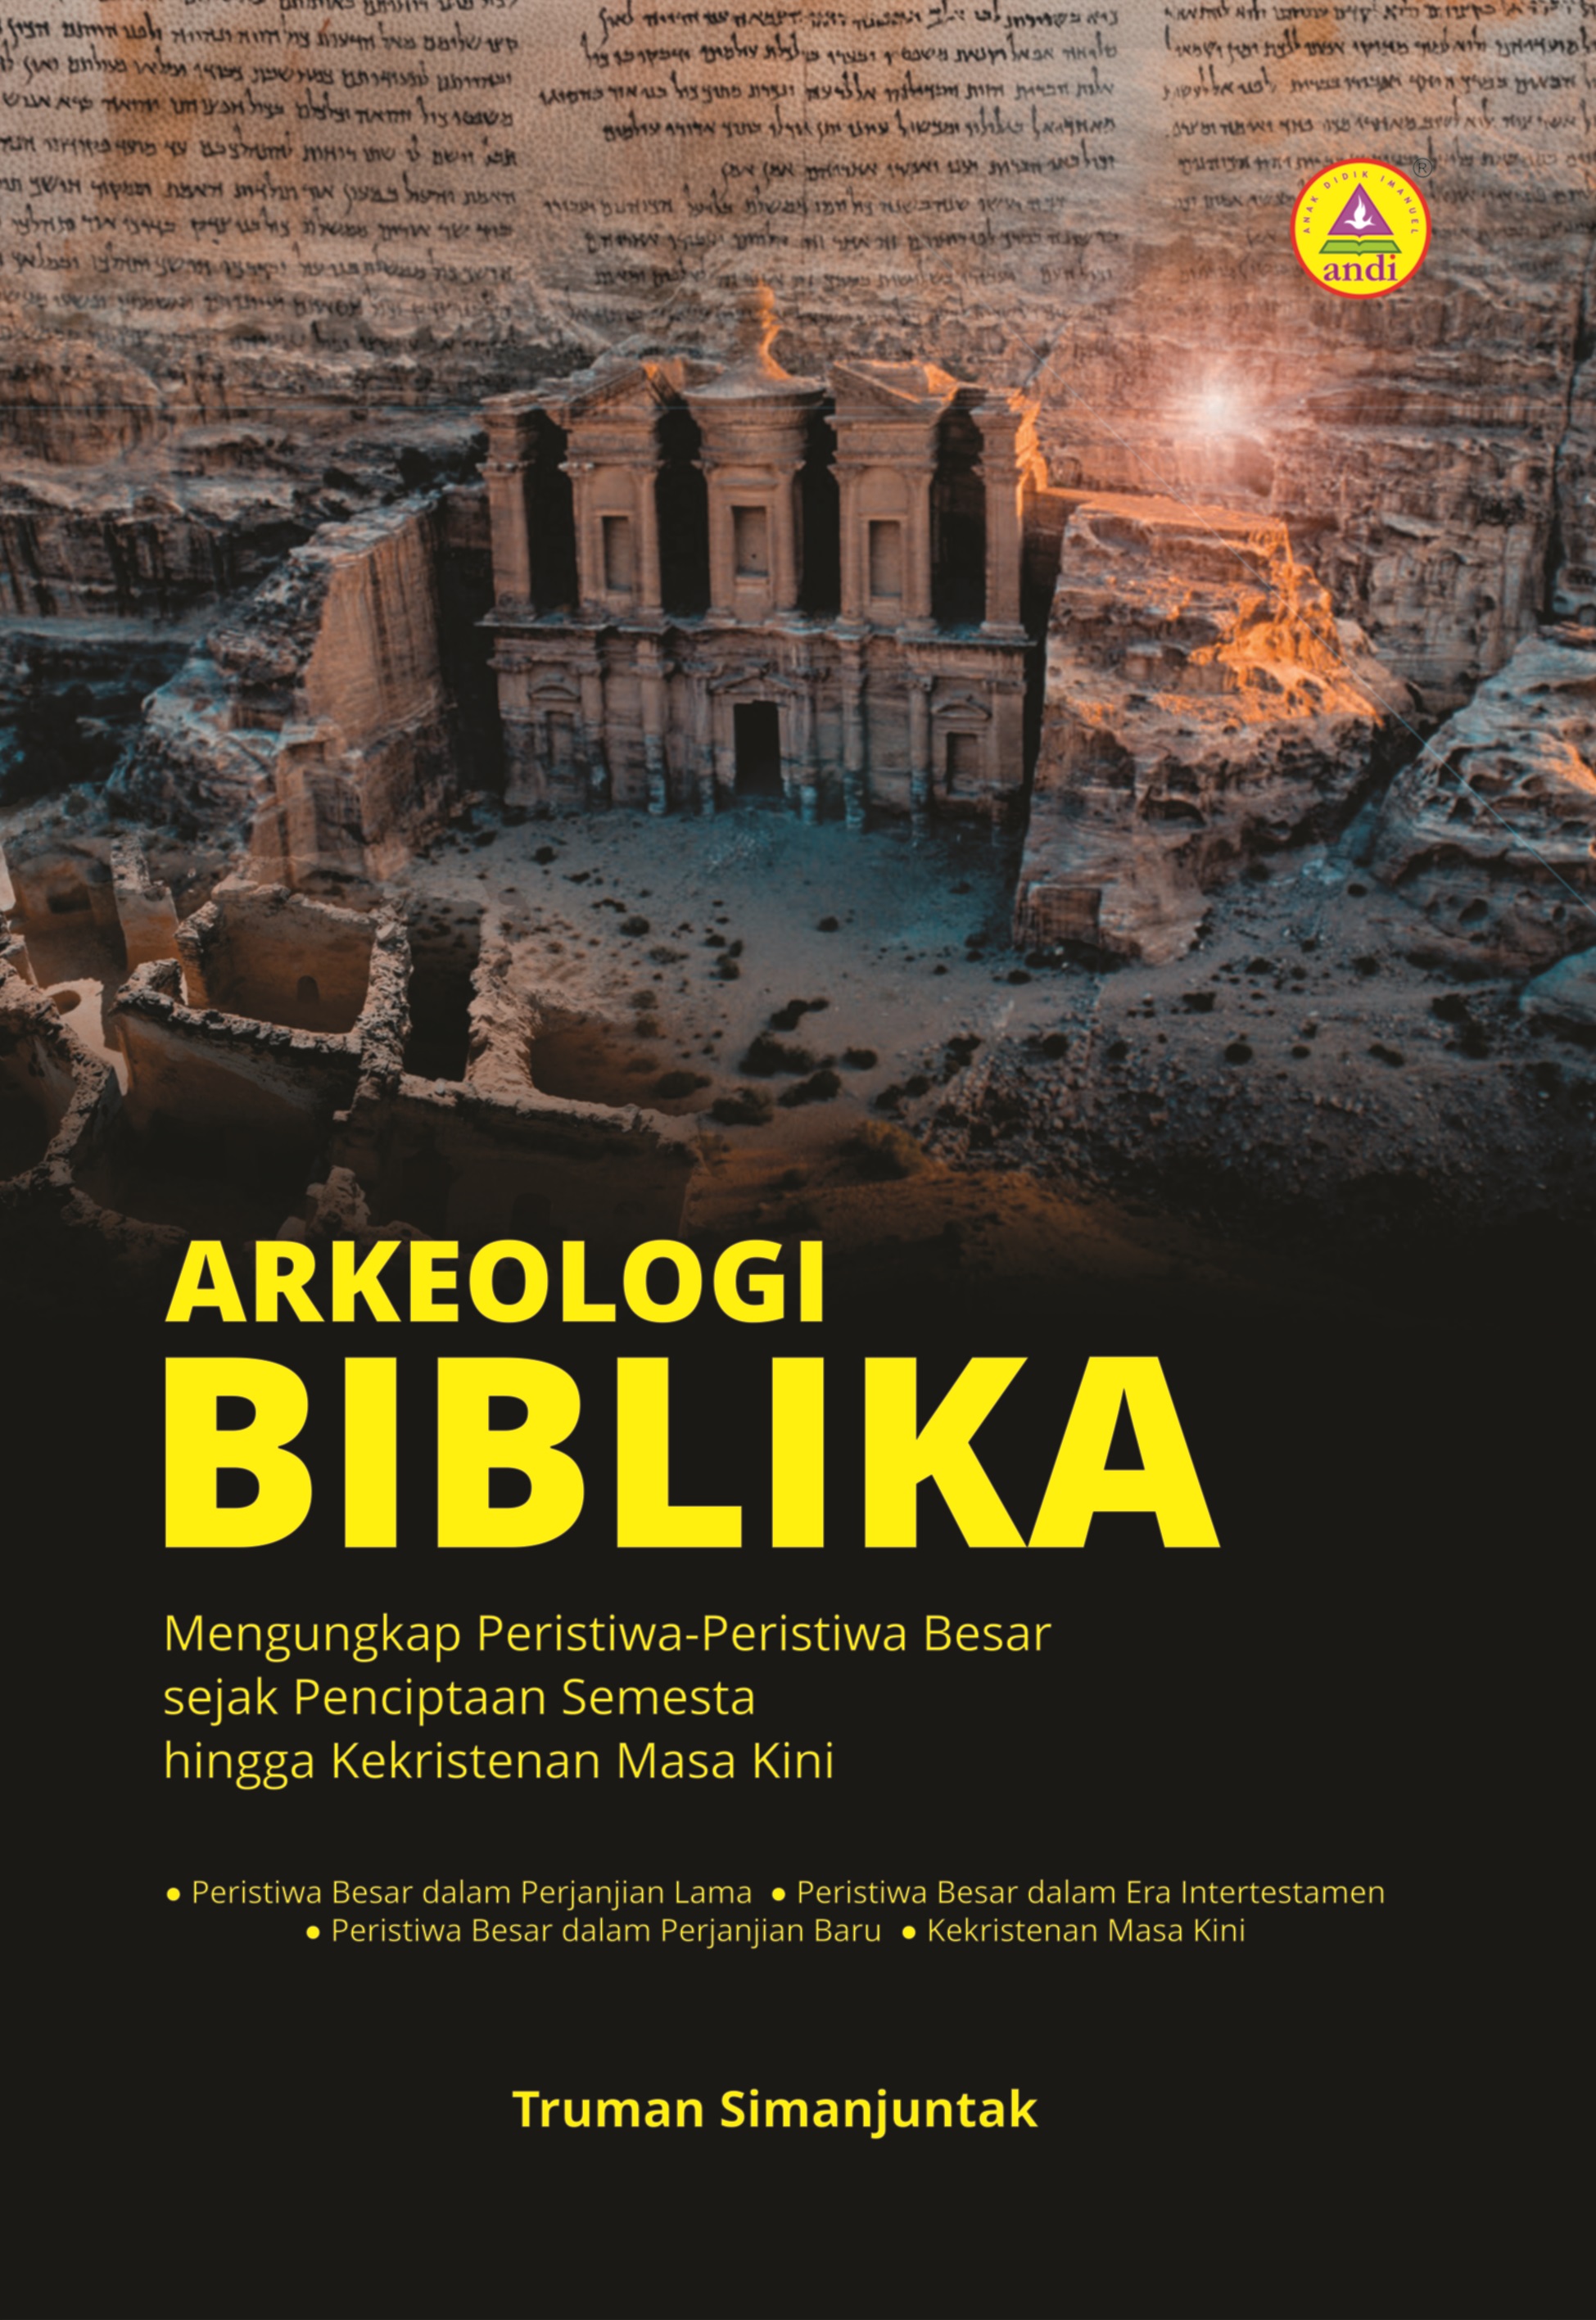 Arkeologi biblika [sumber elektronis] : mengungkap peristiwa-peristiwa besar dalam alkitab sampai kekristenan masa kini